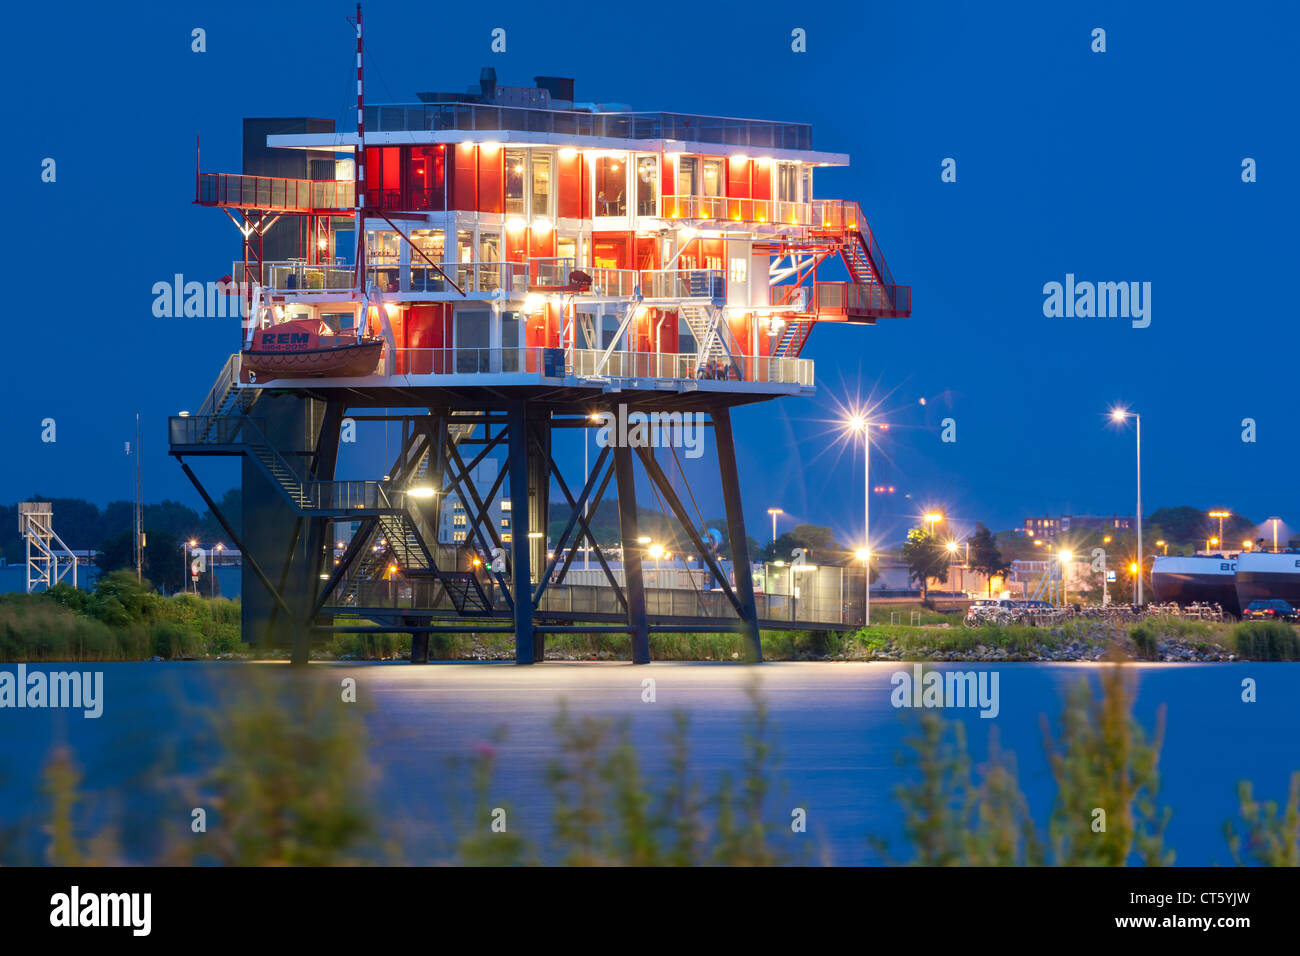 Amsterdam-REM Eiland, REM-Insel-Restaurant. Ein ehemalige Nordsee-Piraten TV-Sender jetzt im Amsterdamer Hafen, Hafen docklands Stockfoto